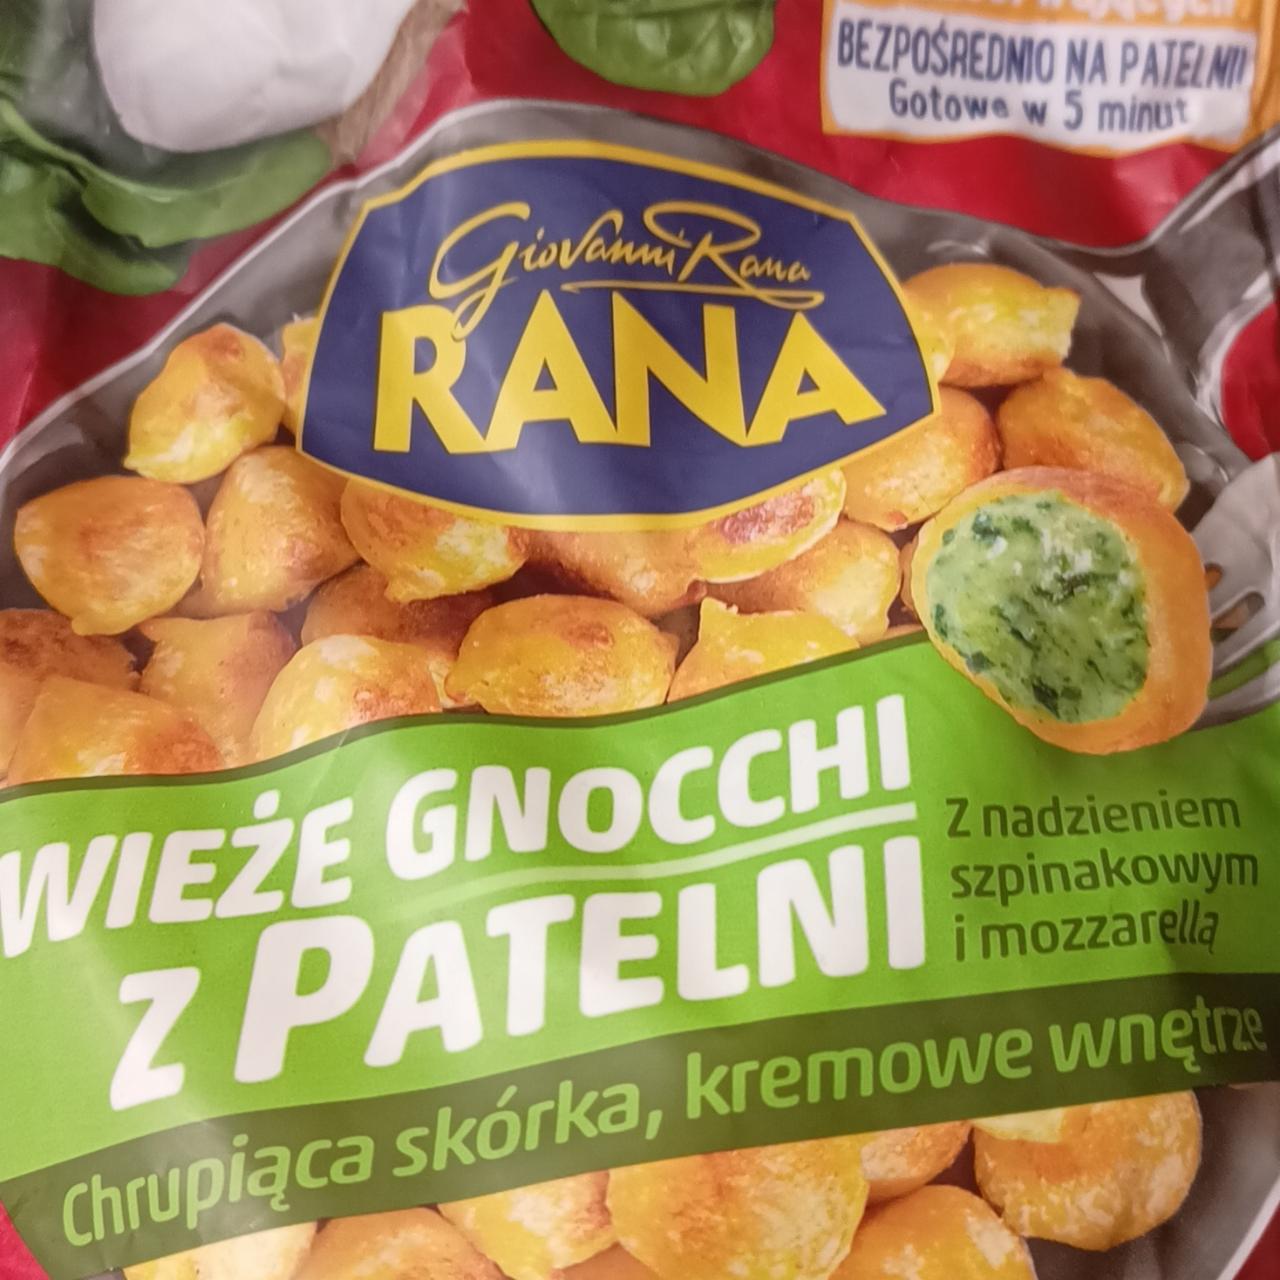 Zdjęcia - Świeże gnocchi z patelni Z nadzieniem szpinakowym i mozzarellą RANA